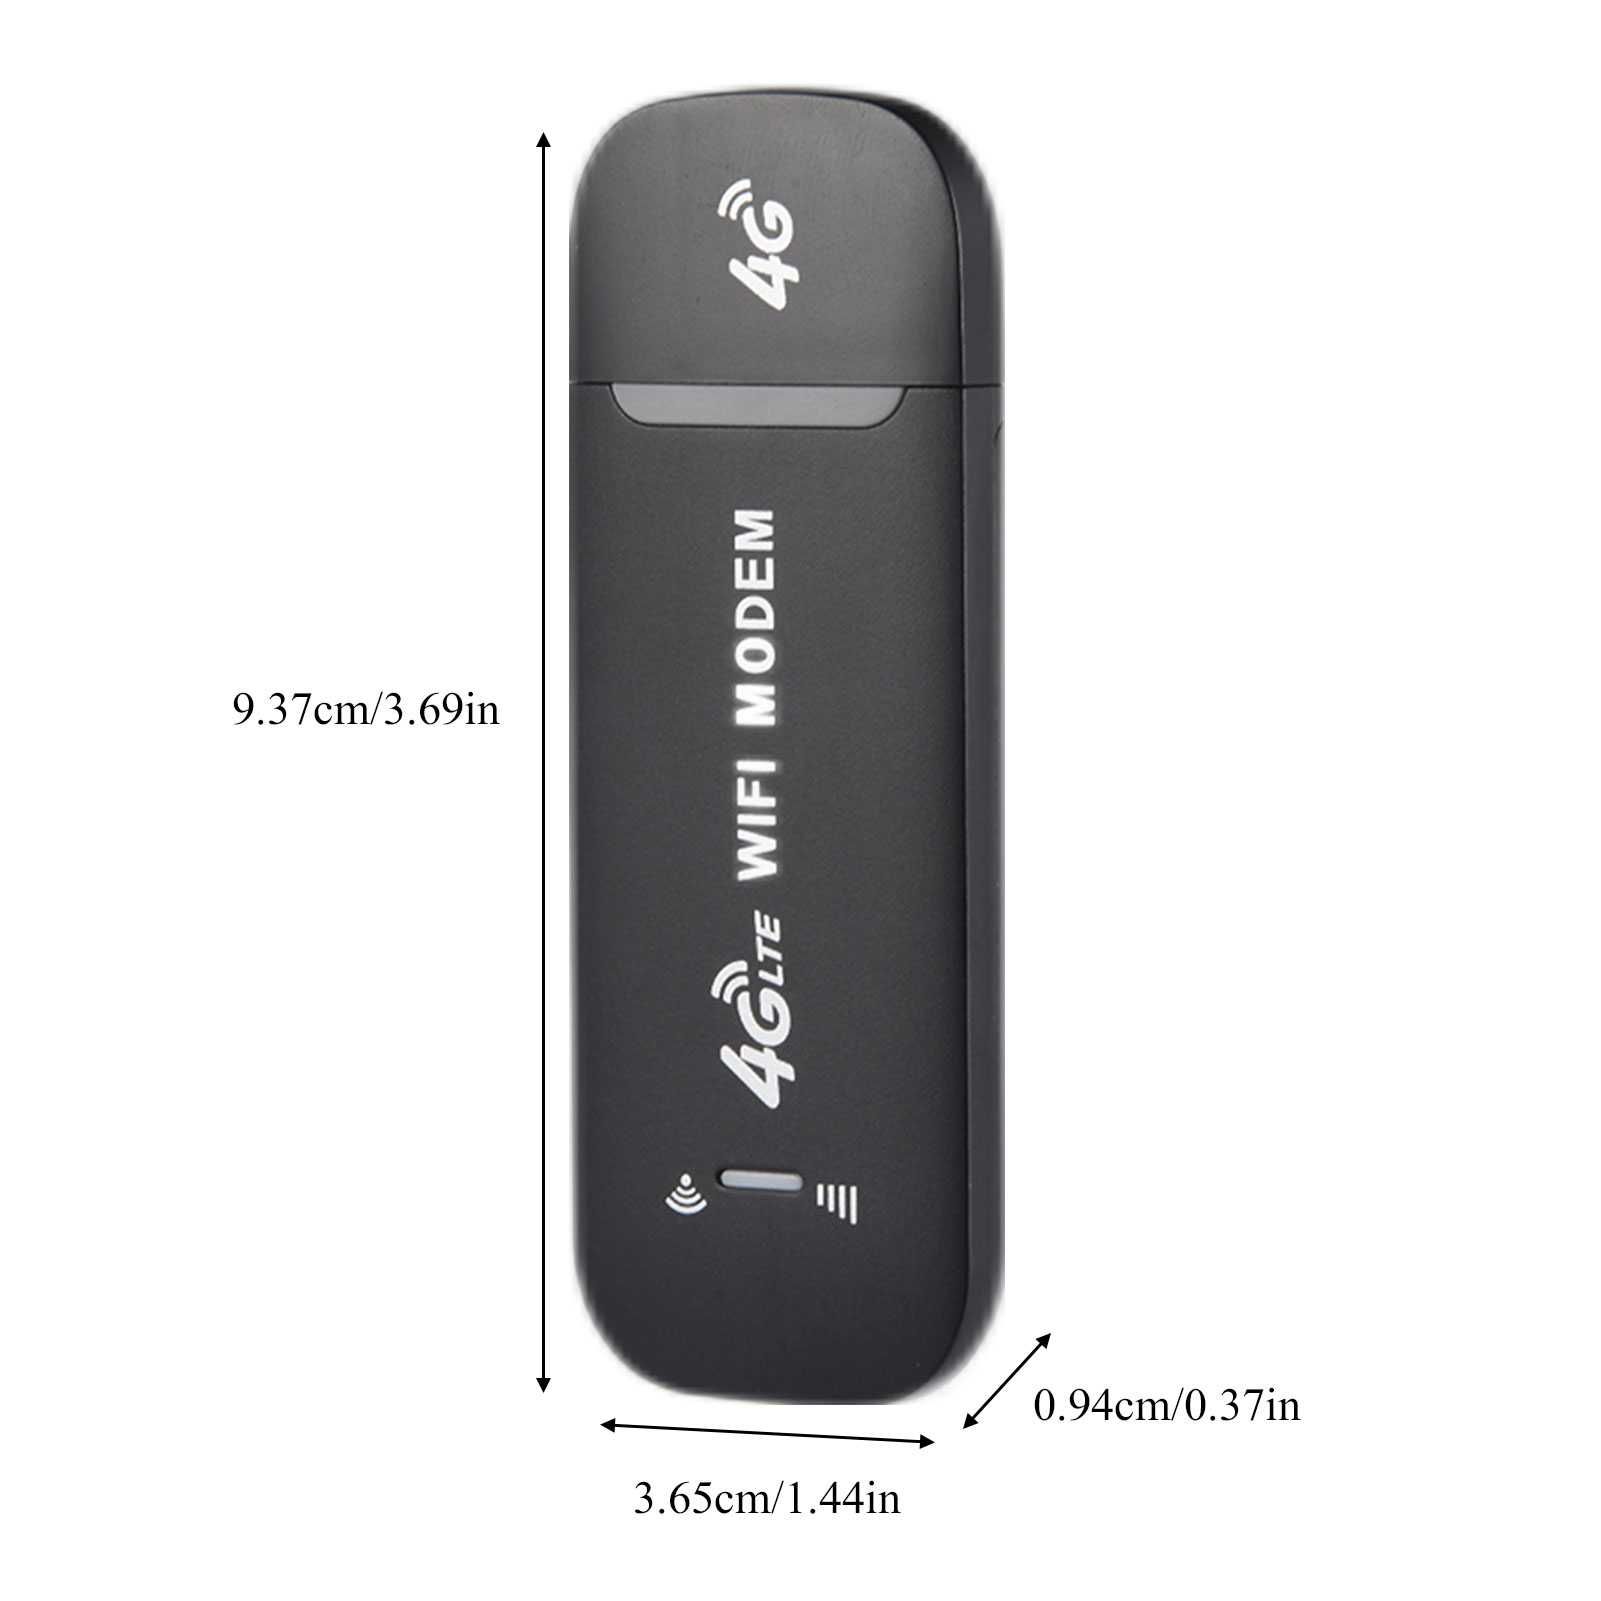 Modem Router Wireless GizMondo® USB WiFi 4G culoare negru